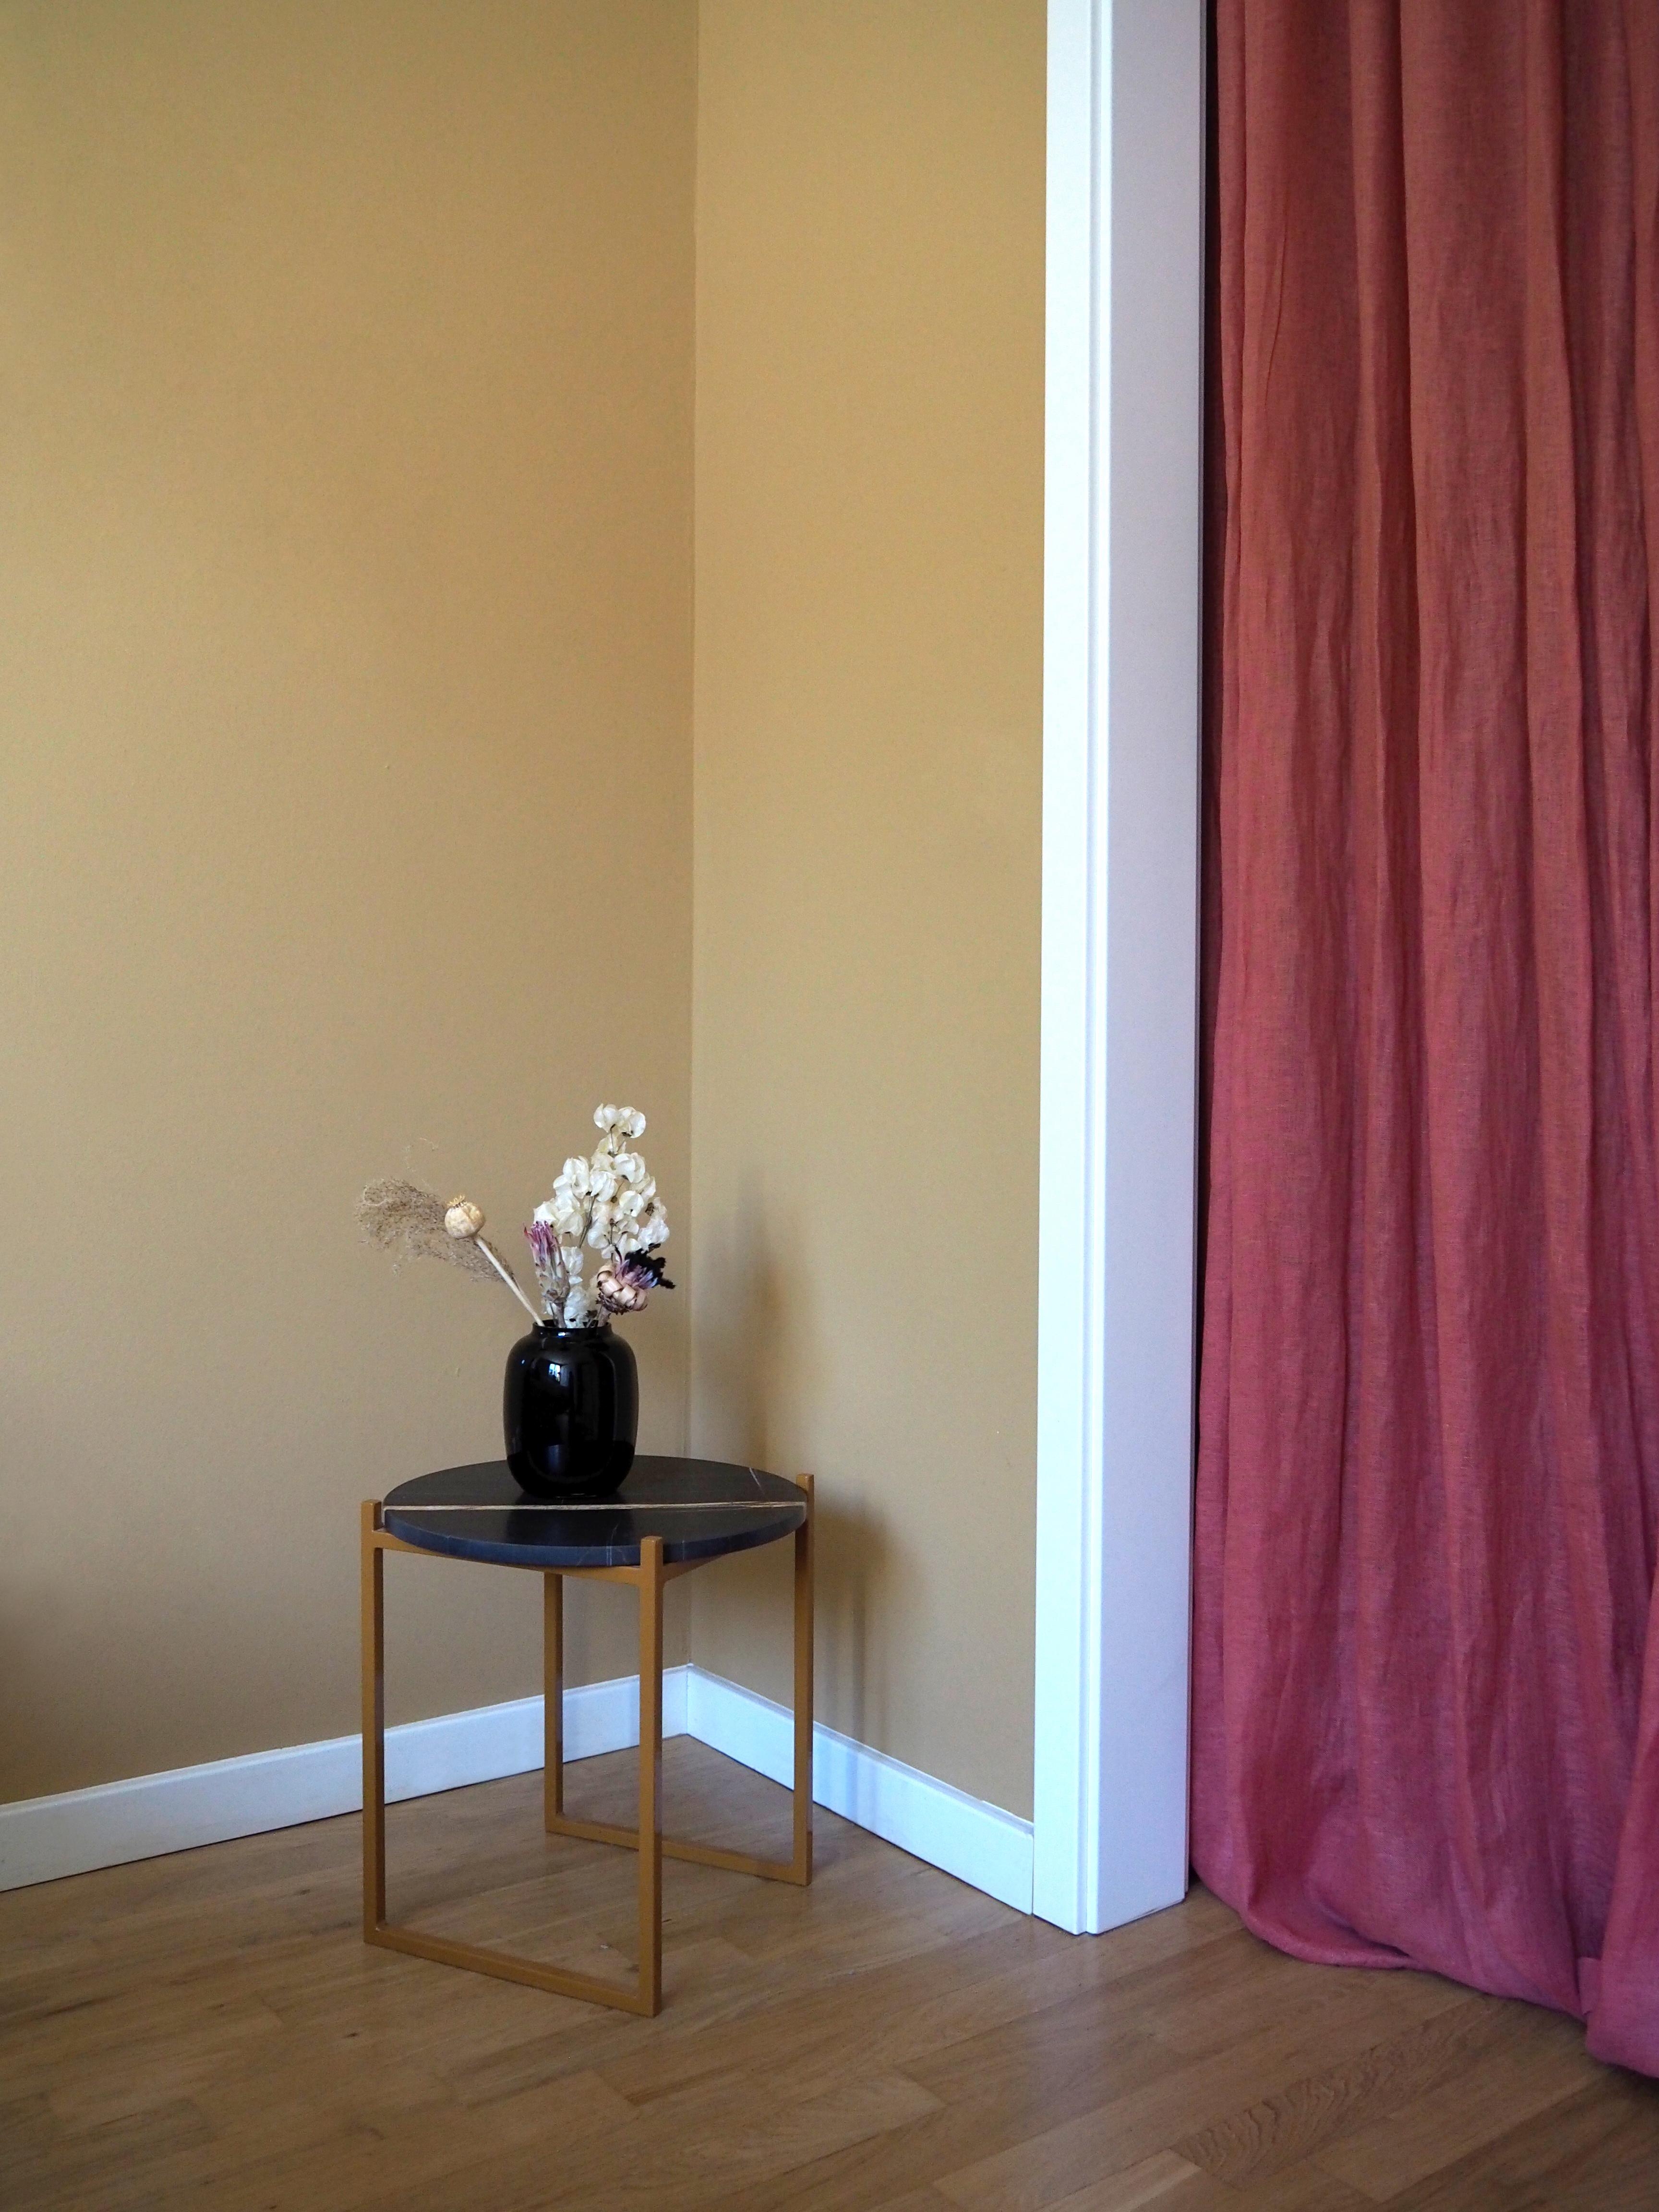 Beistelltisch mit schwarze Marmor trifft auf ockerfarbene Wand und roten Vorhang. #johanenlies #home #upcycling #hygge